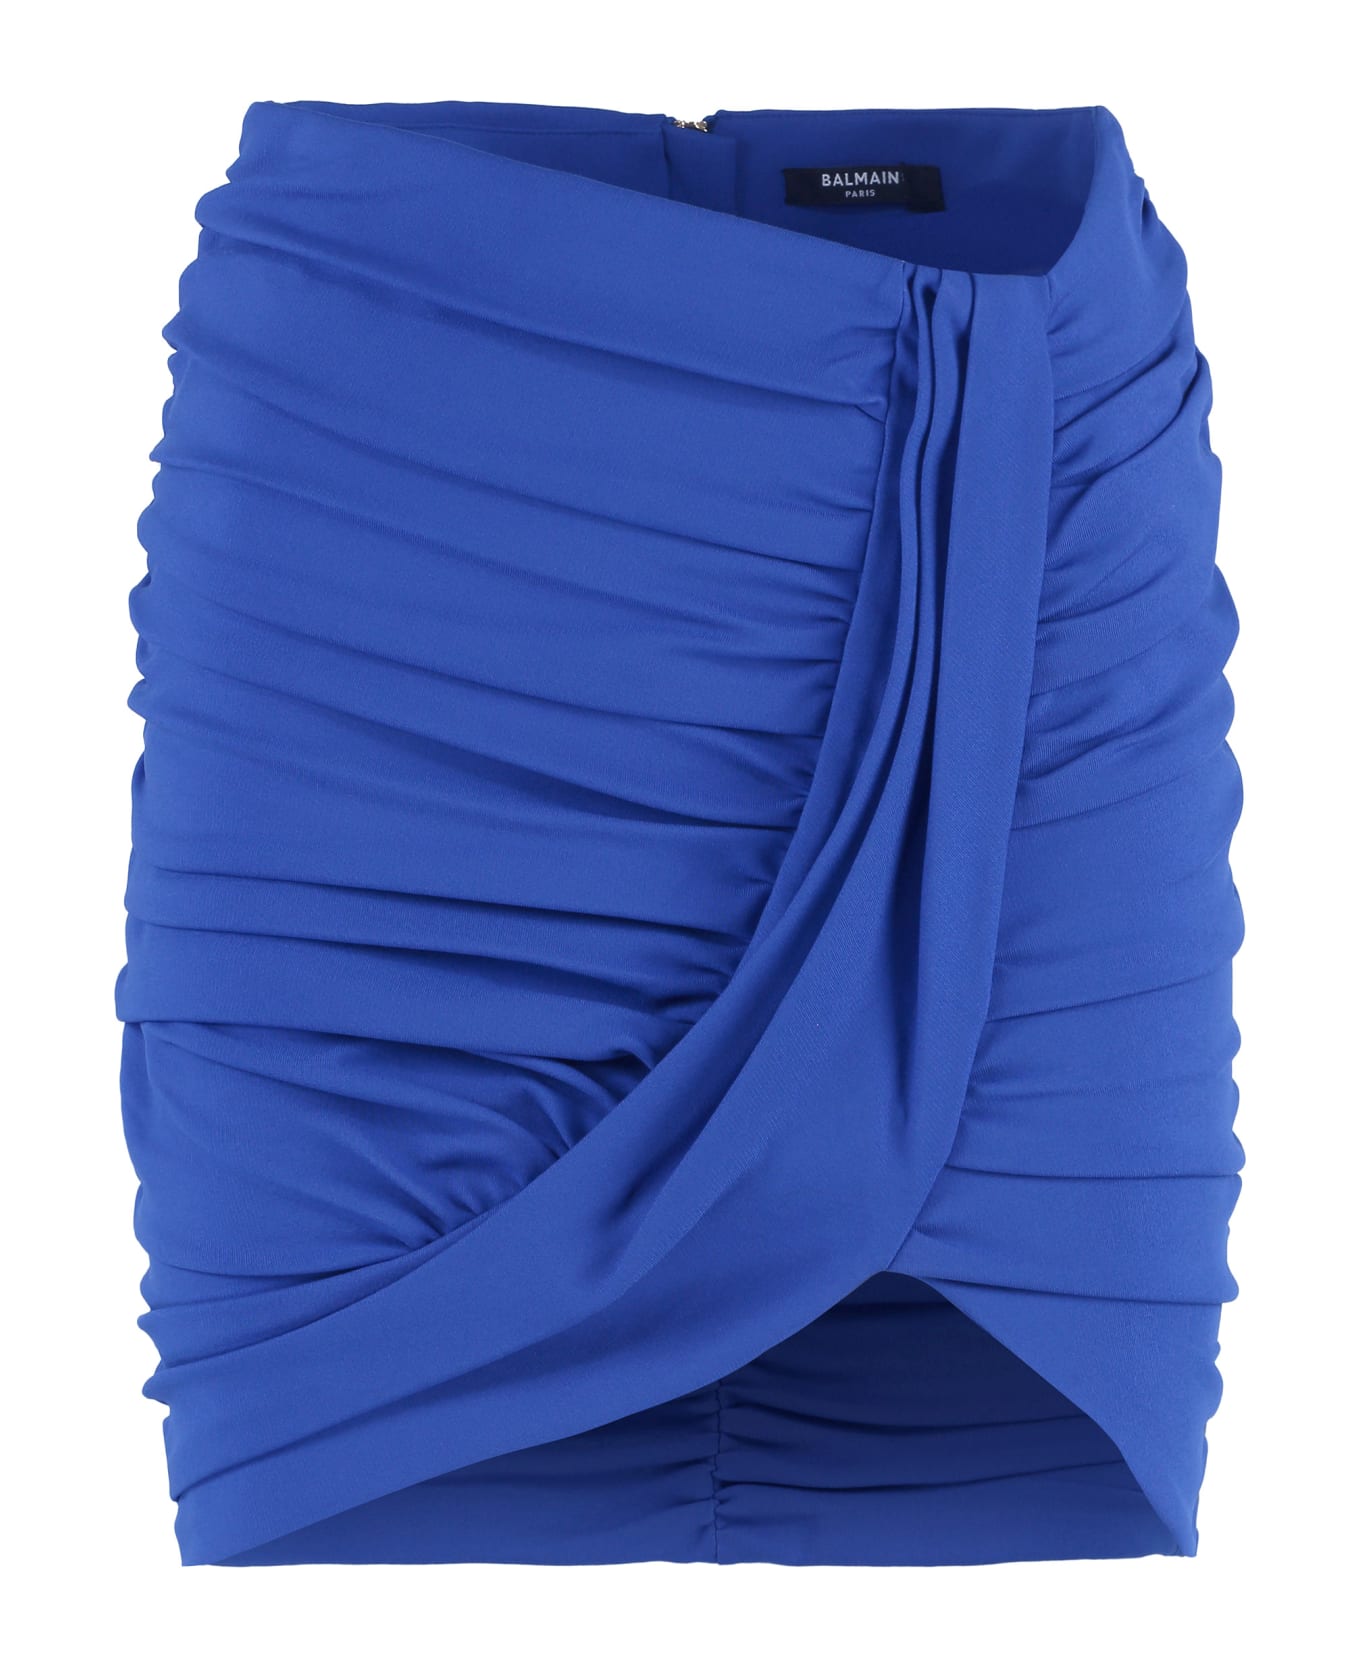 Balmain Draped Skirt - blue スカート